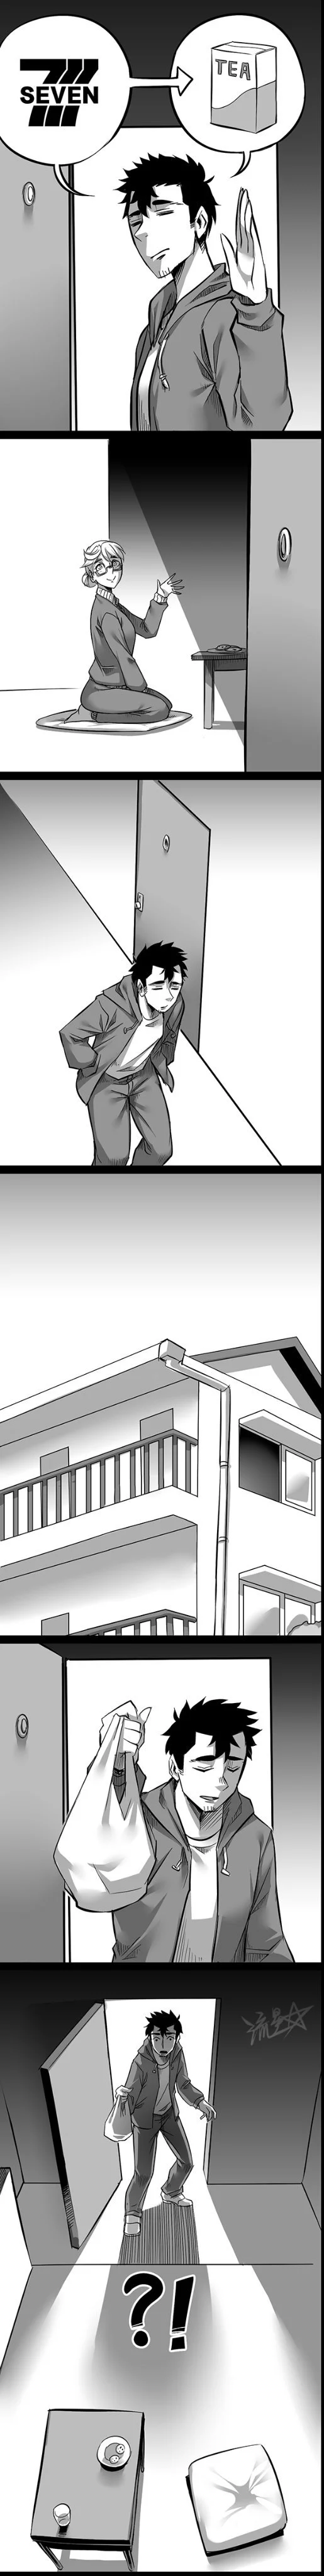 Pocket Sadako 9 - Cnmbwjx, Anime, Call movie, Manga, Milota, Comics, Longpost, Sadako in my home